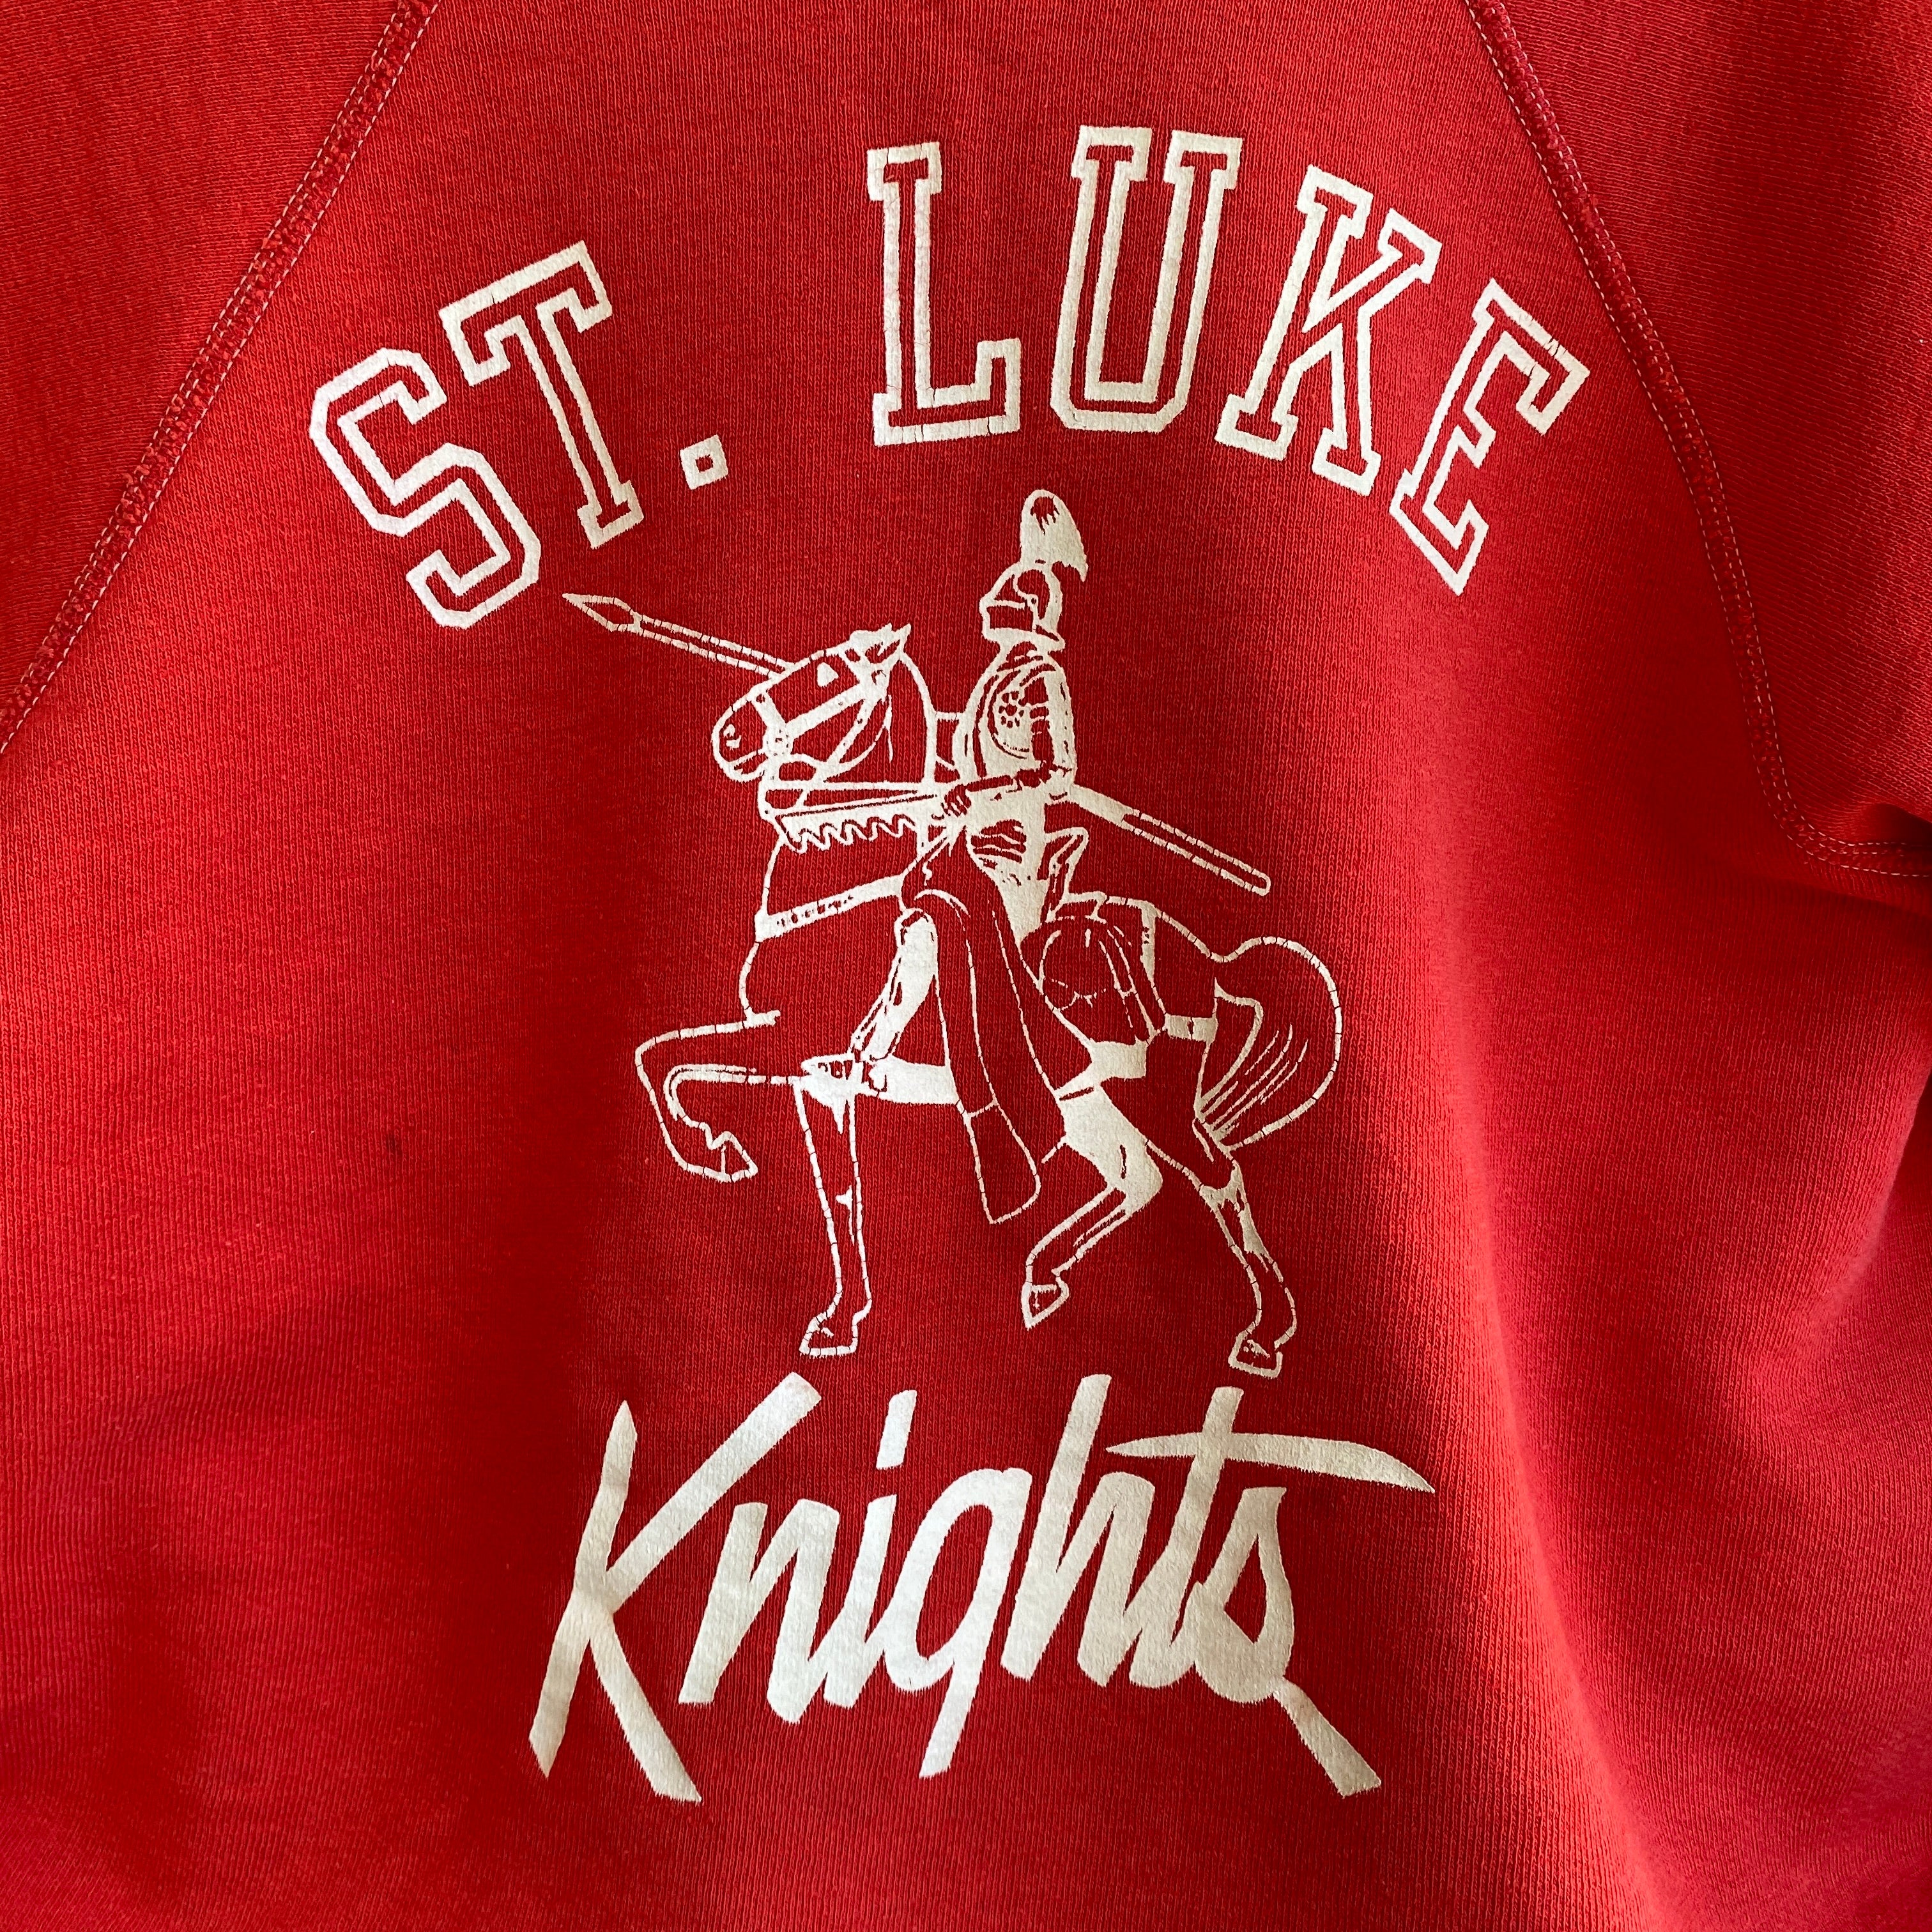 HANESPORT des années 1960 !!! St. Luke Knigts Sweat 100% COTON AMÉRICAIN de petite taille!!!